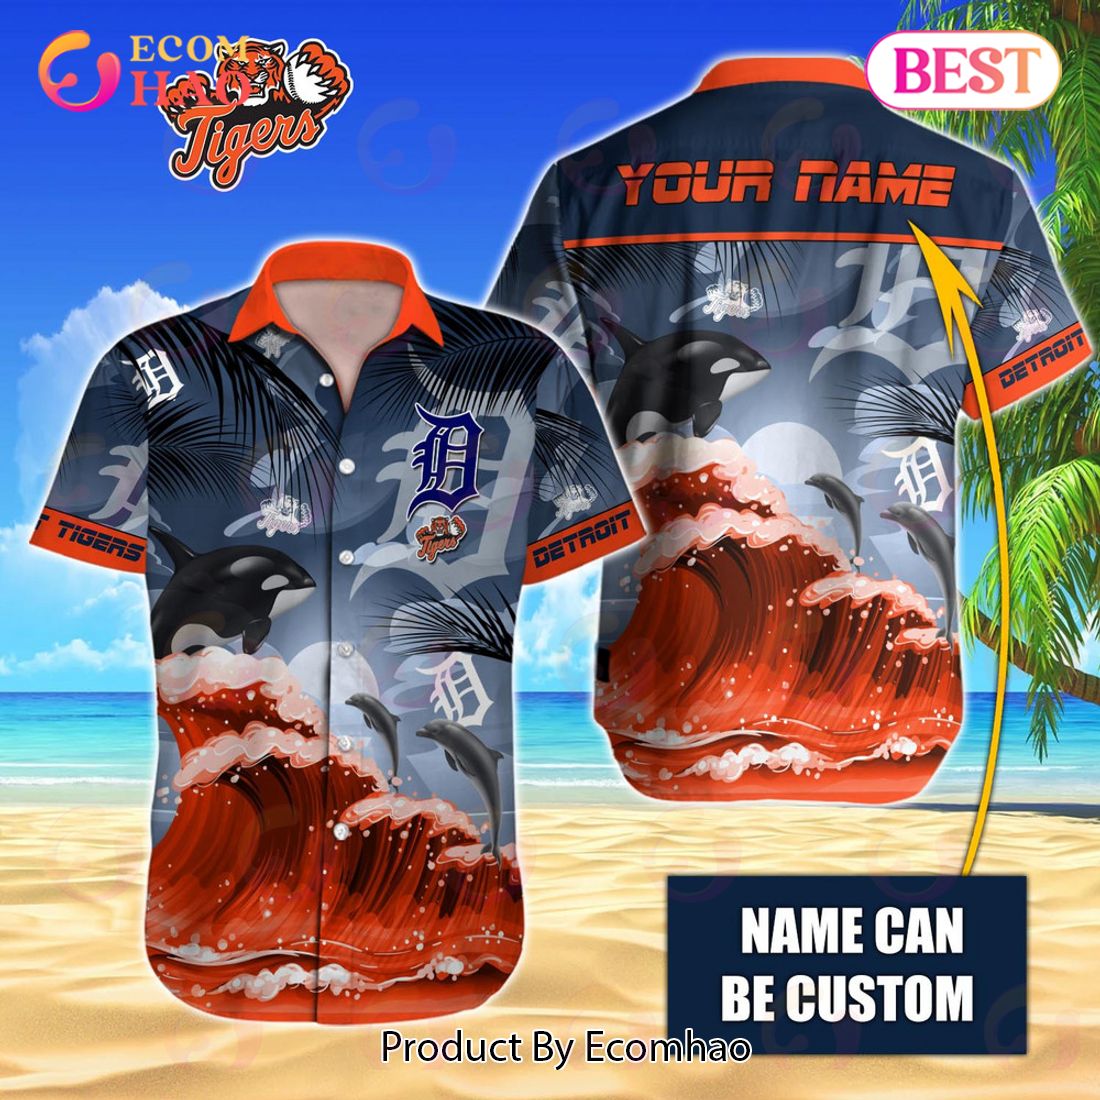 Detroit Tigers Hawaiian Shirt Summer Button Up - Hot Sale 2023